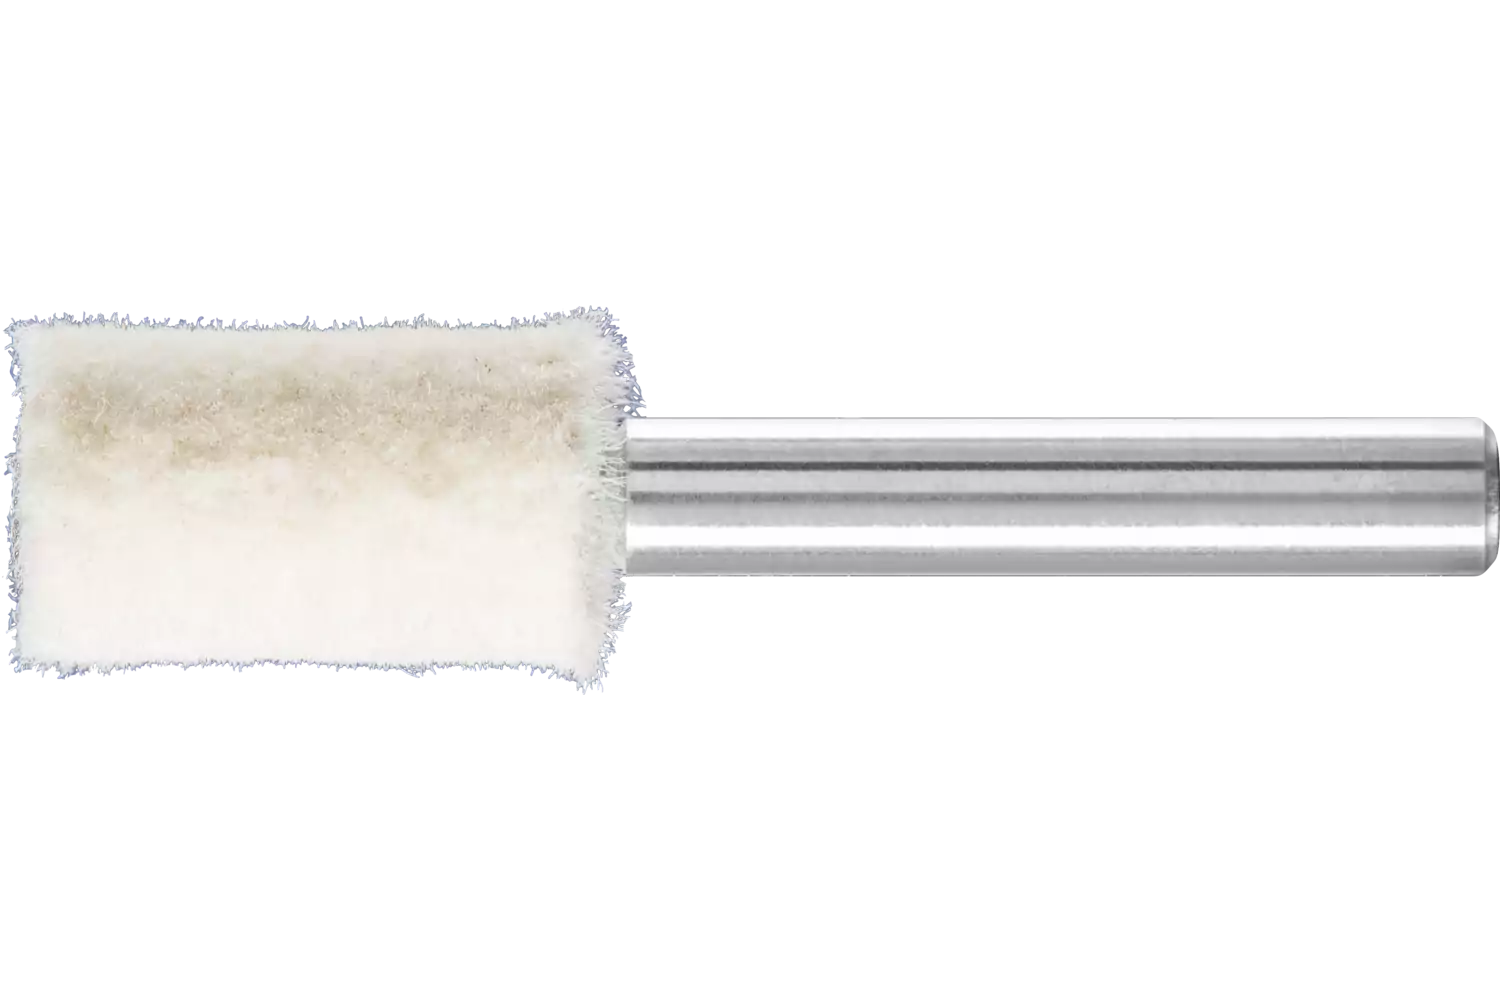 Feltri con gambo per lucidare medio-duri forma cilindrica Ø 12x20 mm, gambo Ø 6 mm 1